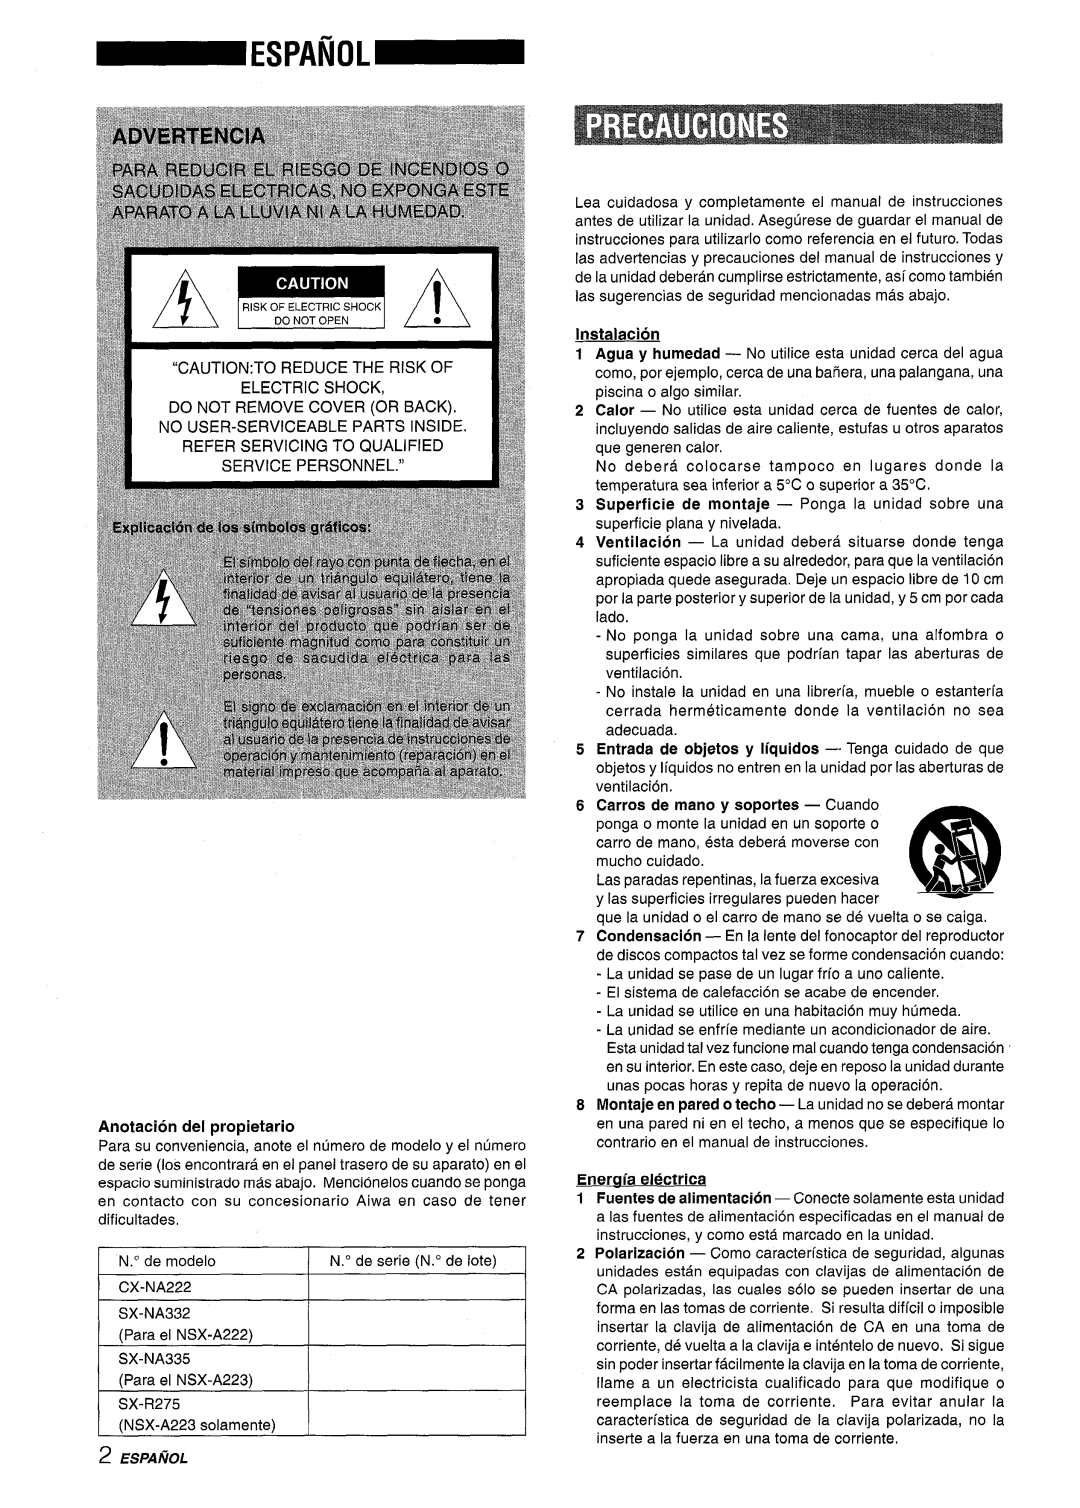 Aiwa CX-NA222 manual Anotacion del propietario, Instalacion, Eneraia el%triCa 